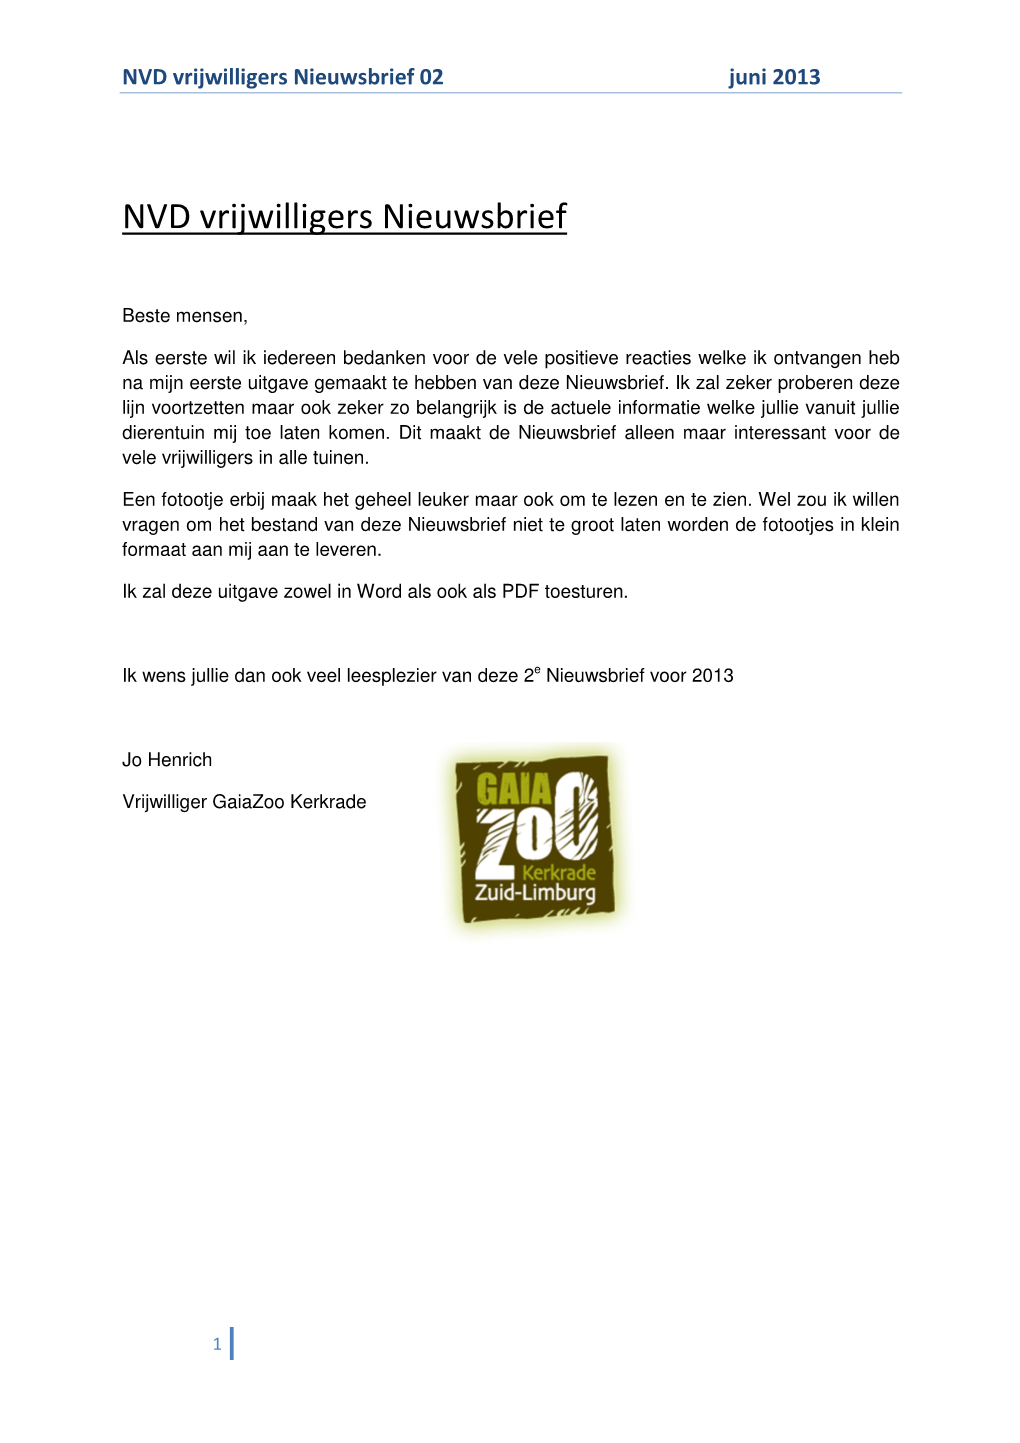 NVD Vrijwilligers Nieuwsbrief 02 Juni 2013